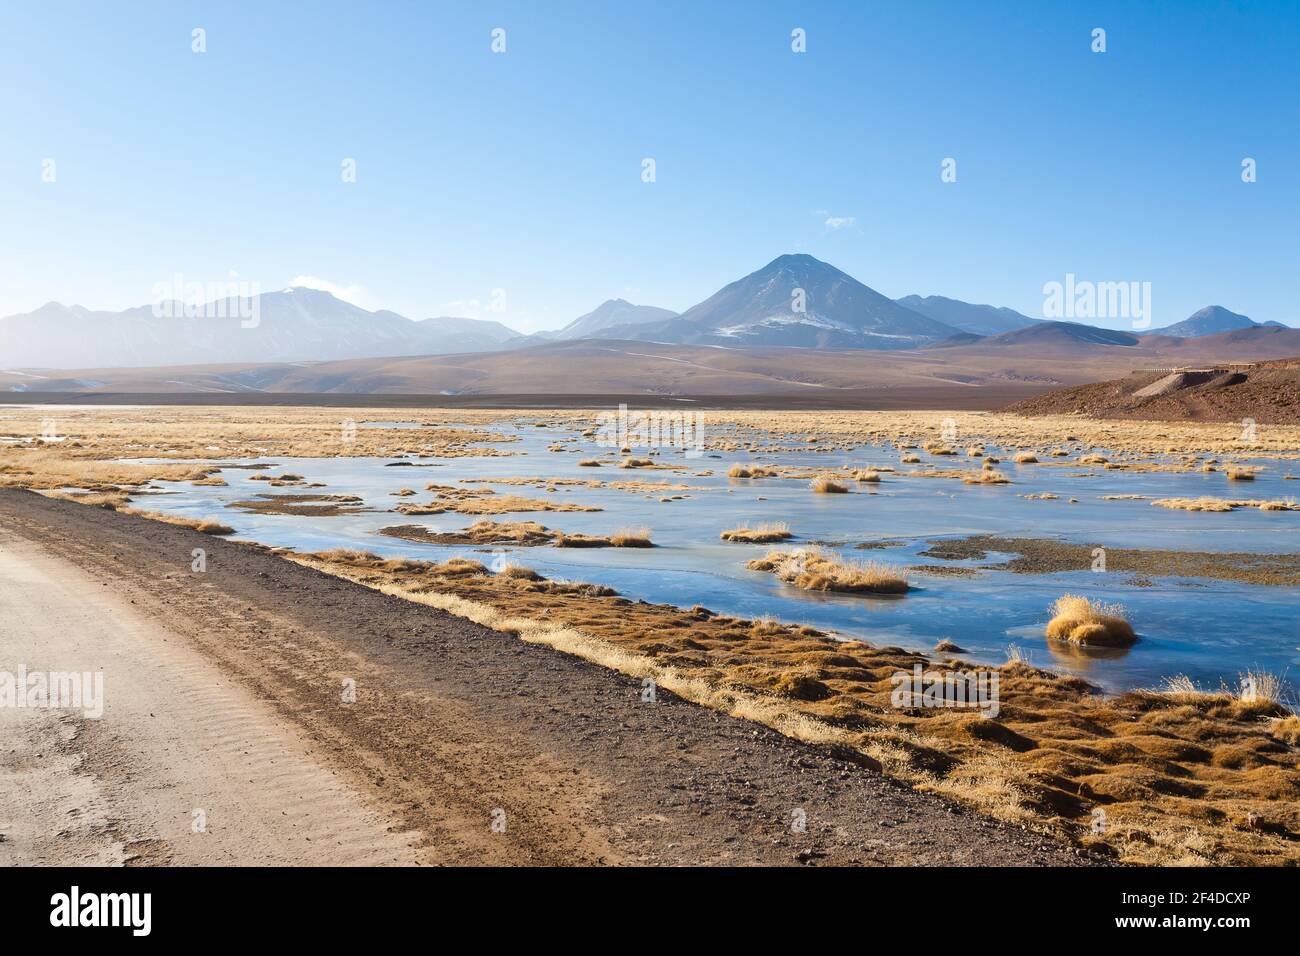 Chilean landscape, dirt road and Licancabur volcano. Chile panorama Stock Photo